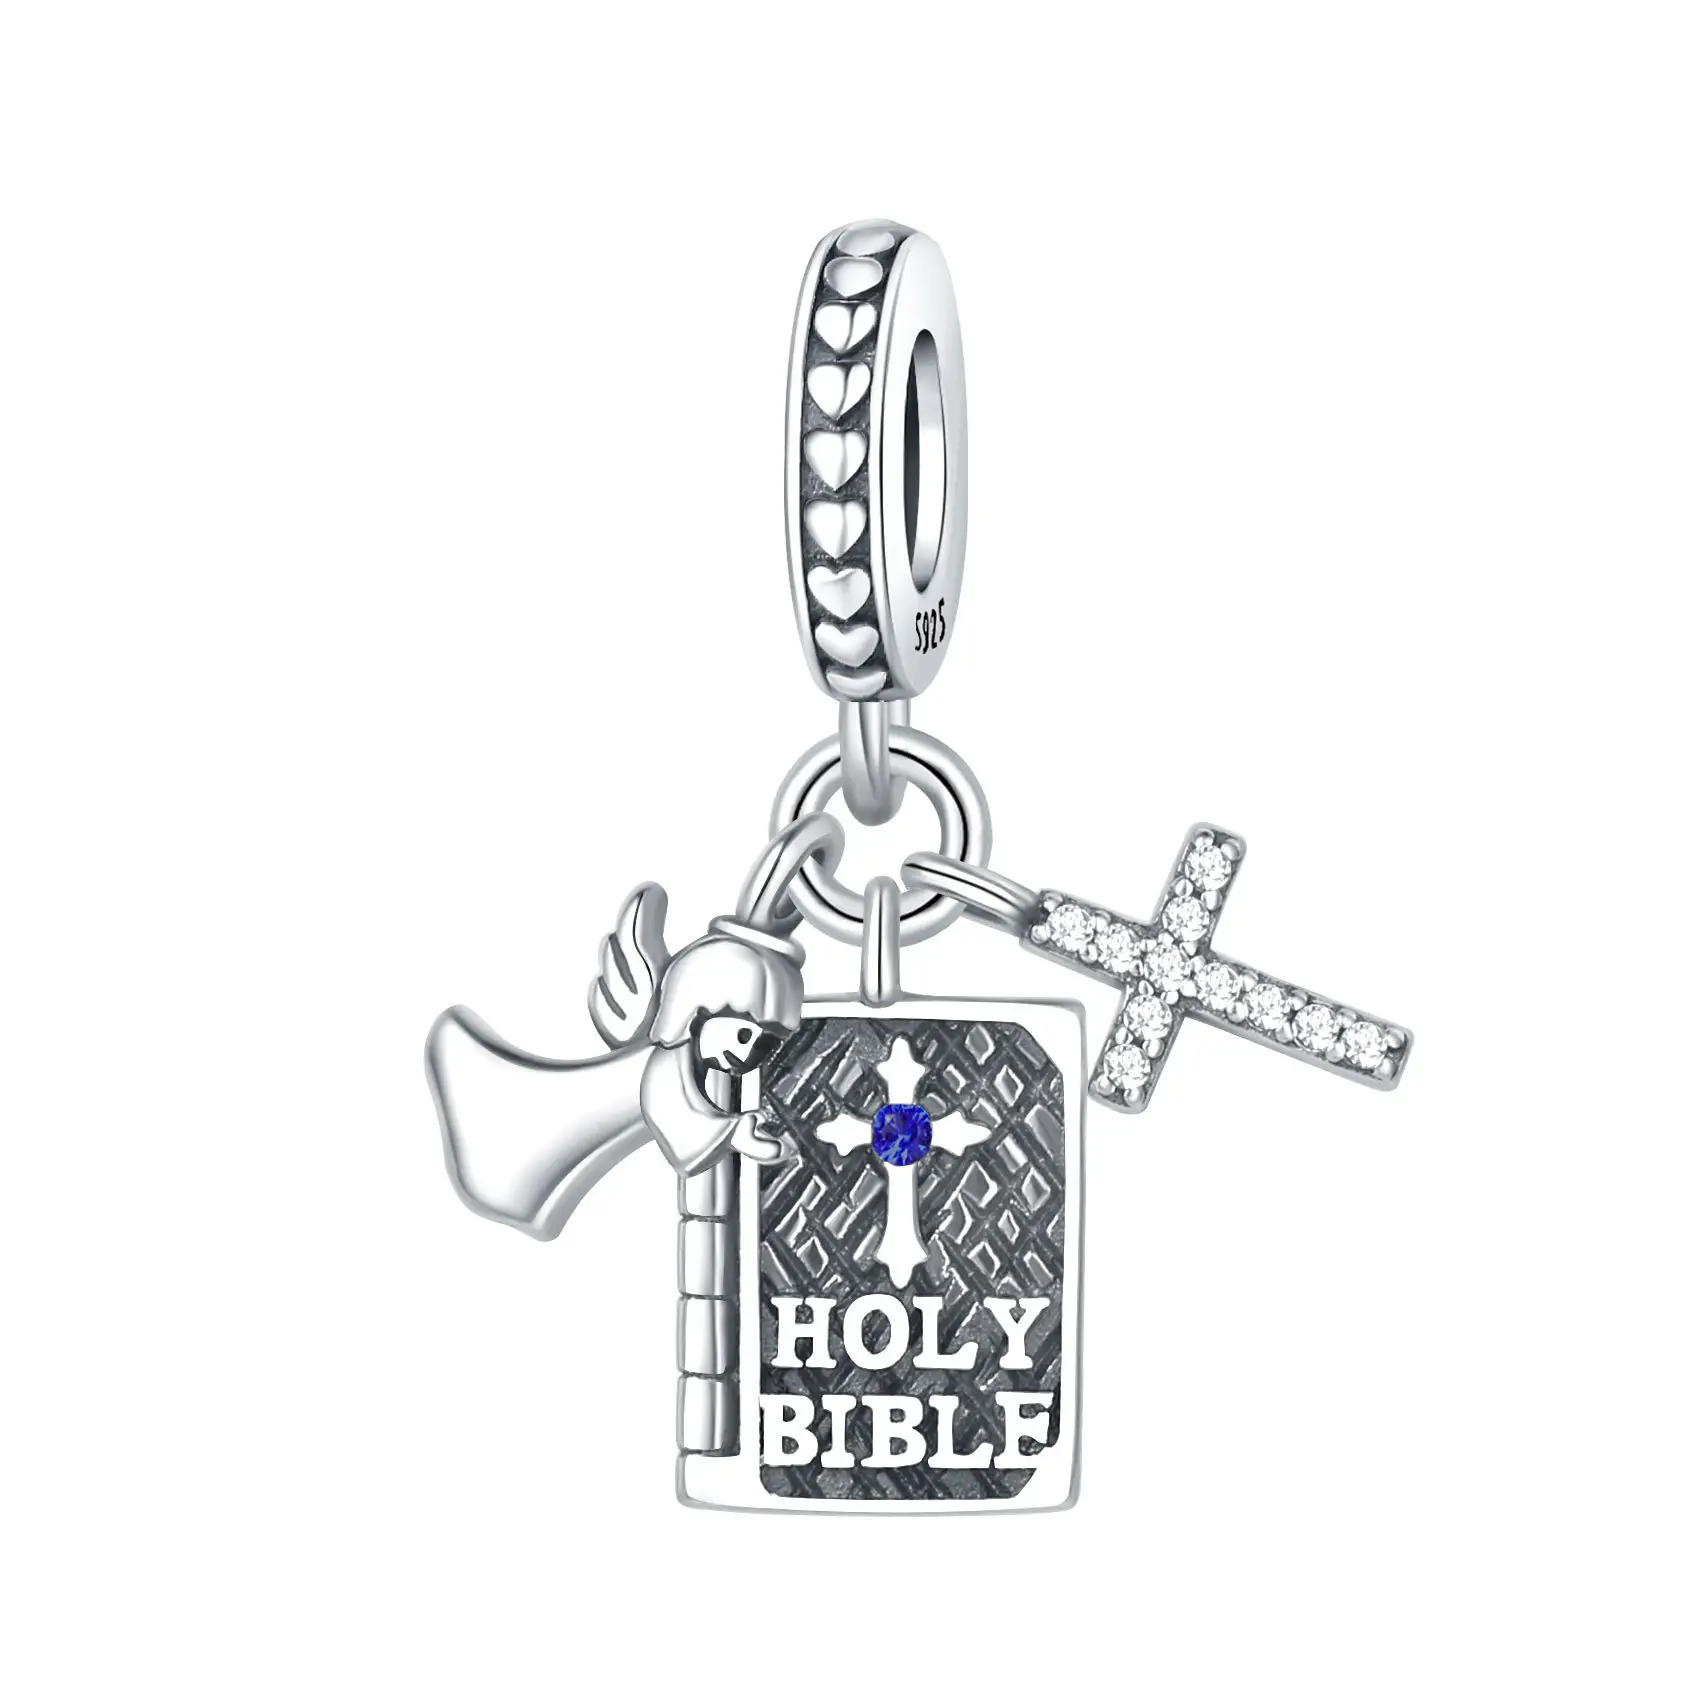 Vintage klassische Charme Perlen 925 Sterling-Silber Bibel Engel Kreuz Anhänger für Armband Halskette Herstellung Schmuckzubehör